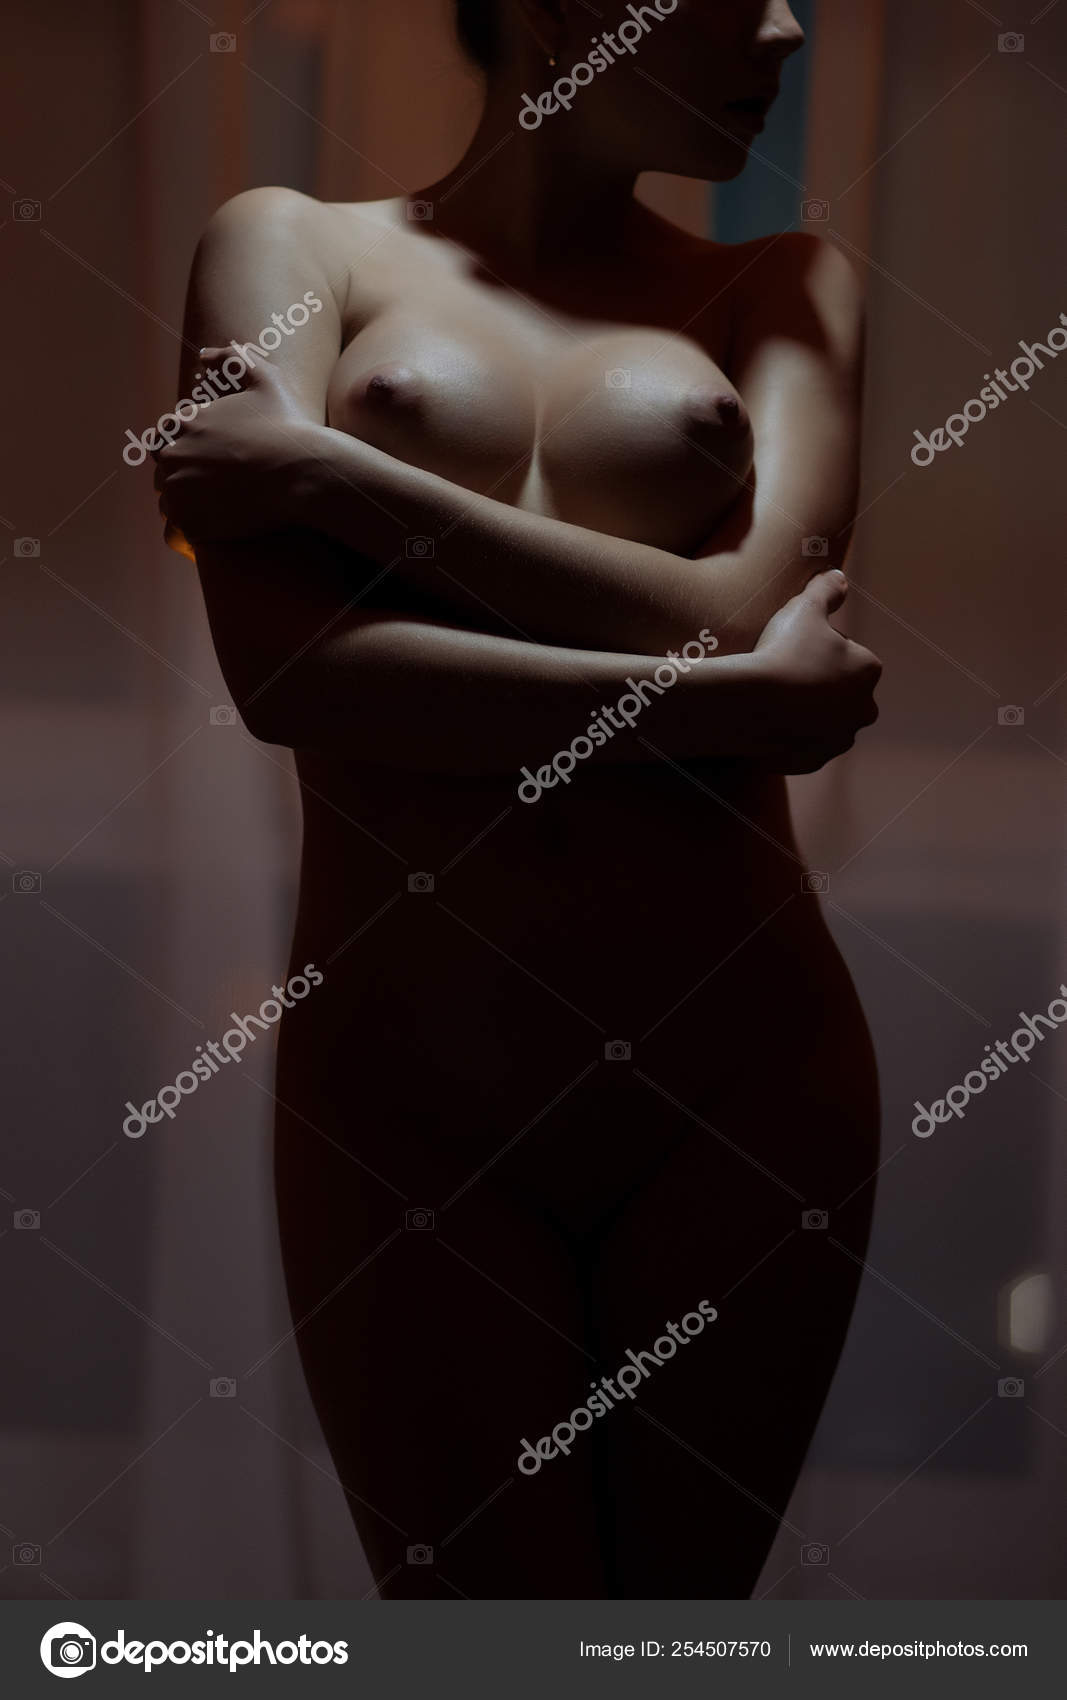 https://st4n.depositphotos.com/5034975/25450/i/1600/depositphotos_254507570-stock-photo-young-sensual-naked-woman-posing.jpg